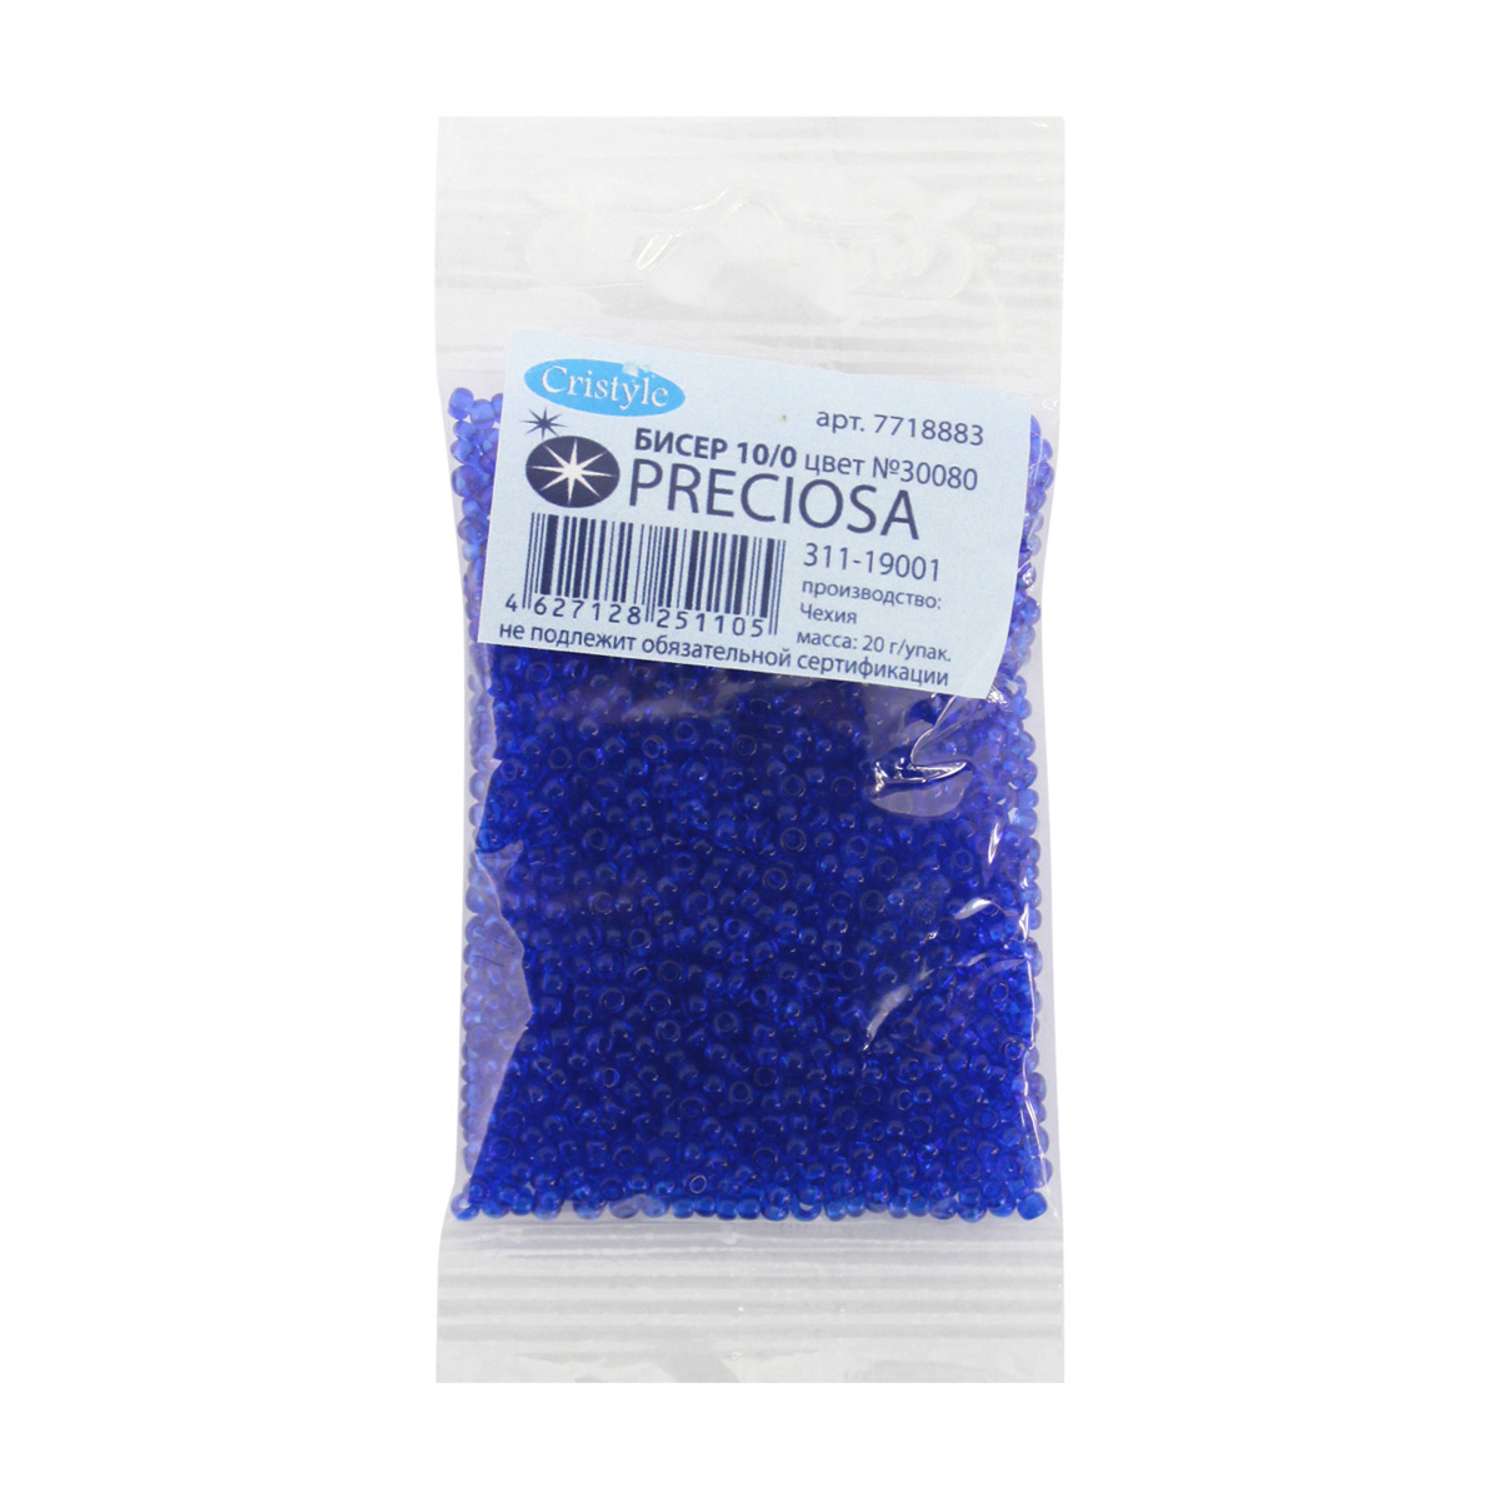 Бисер Preciosa чешский прозрачный 10/0 20 гр Прециоза 30080 синий - фото 1